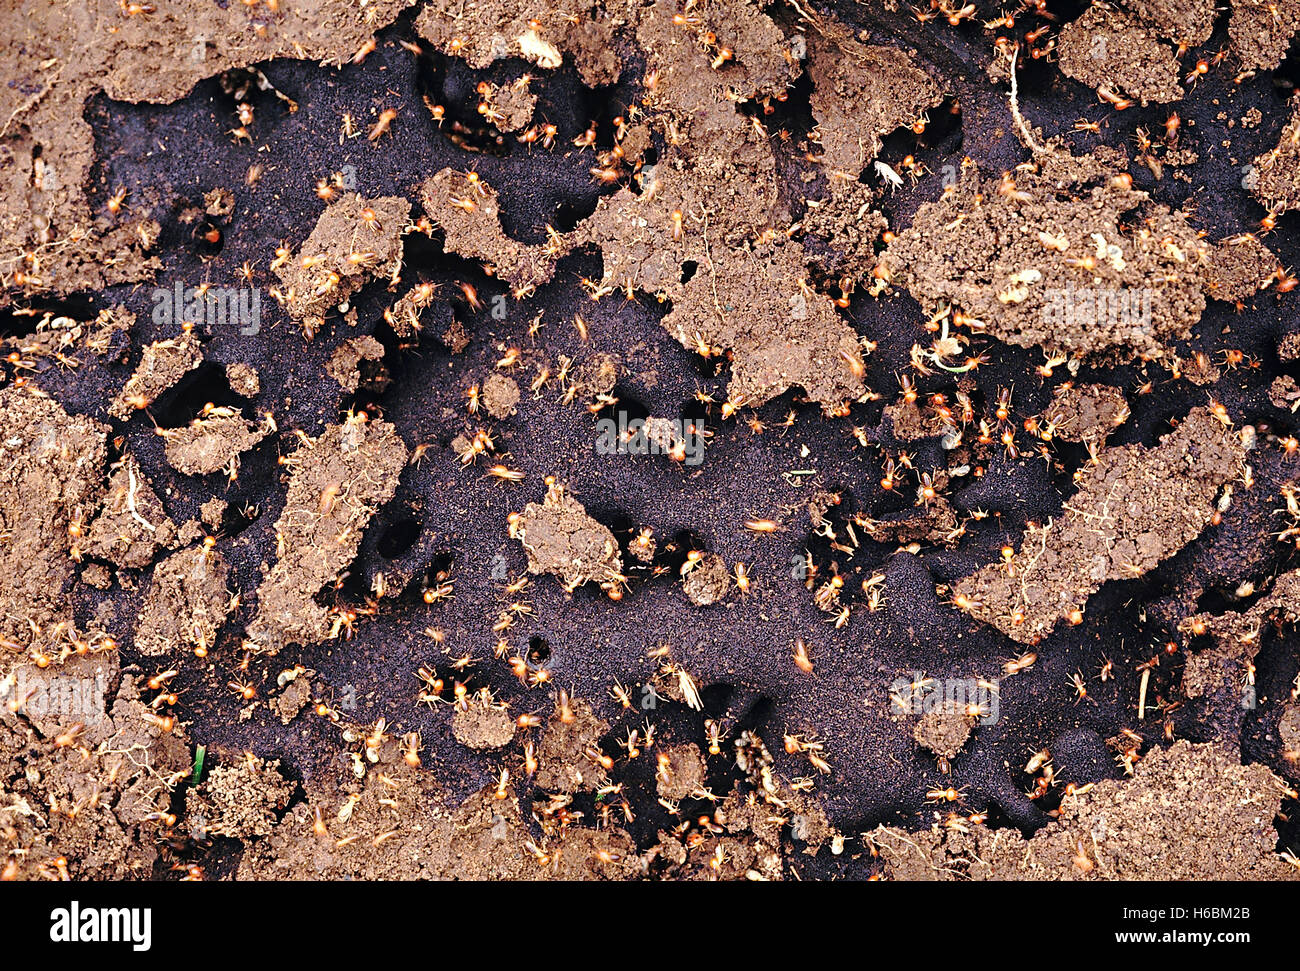 Las termitas. Conocido también como hormigas blancas. las termitas se alimentan de madera o el hongo que se cultiva en madera masticada Foto de stock